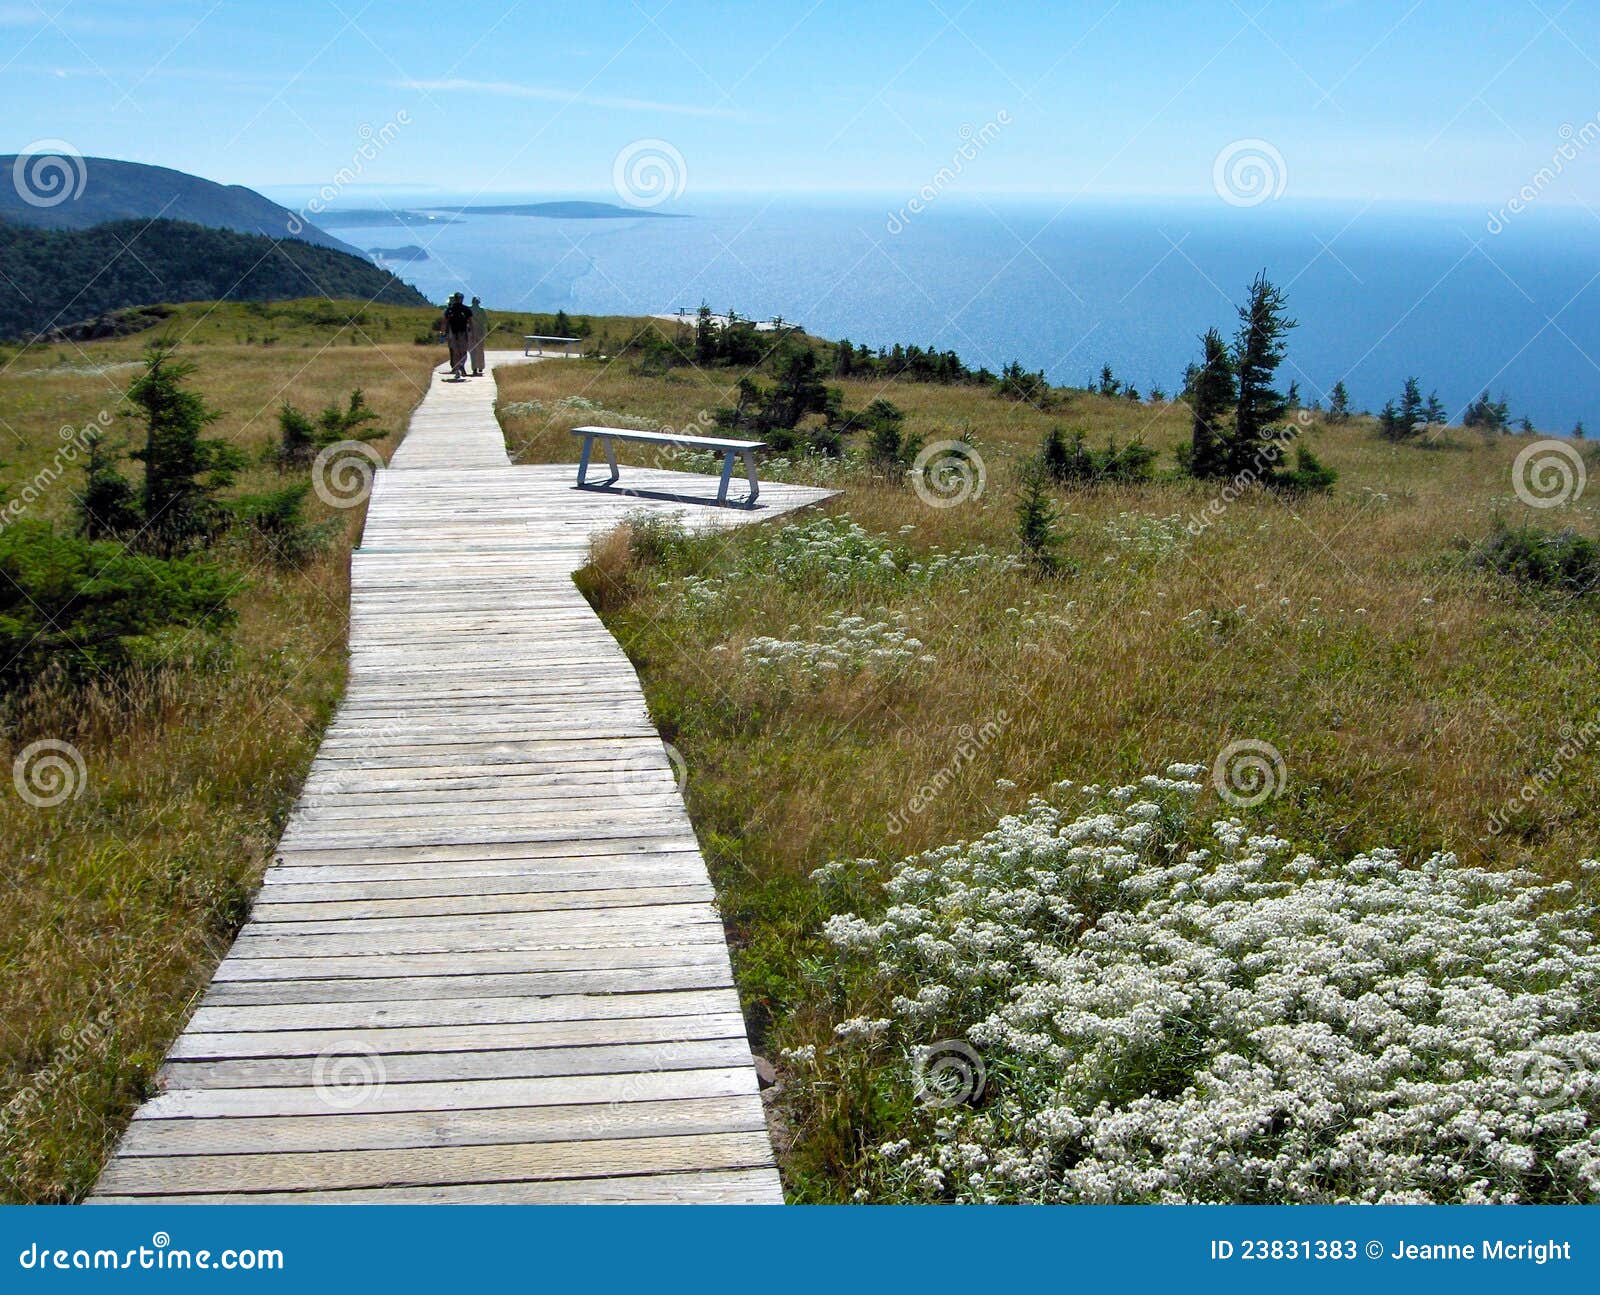 cape breton scenic trail with coastline view